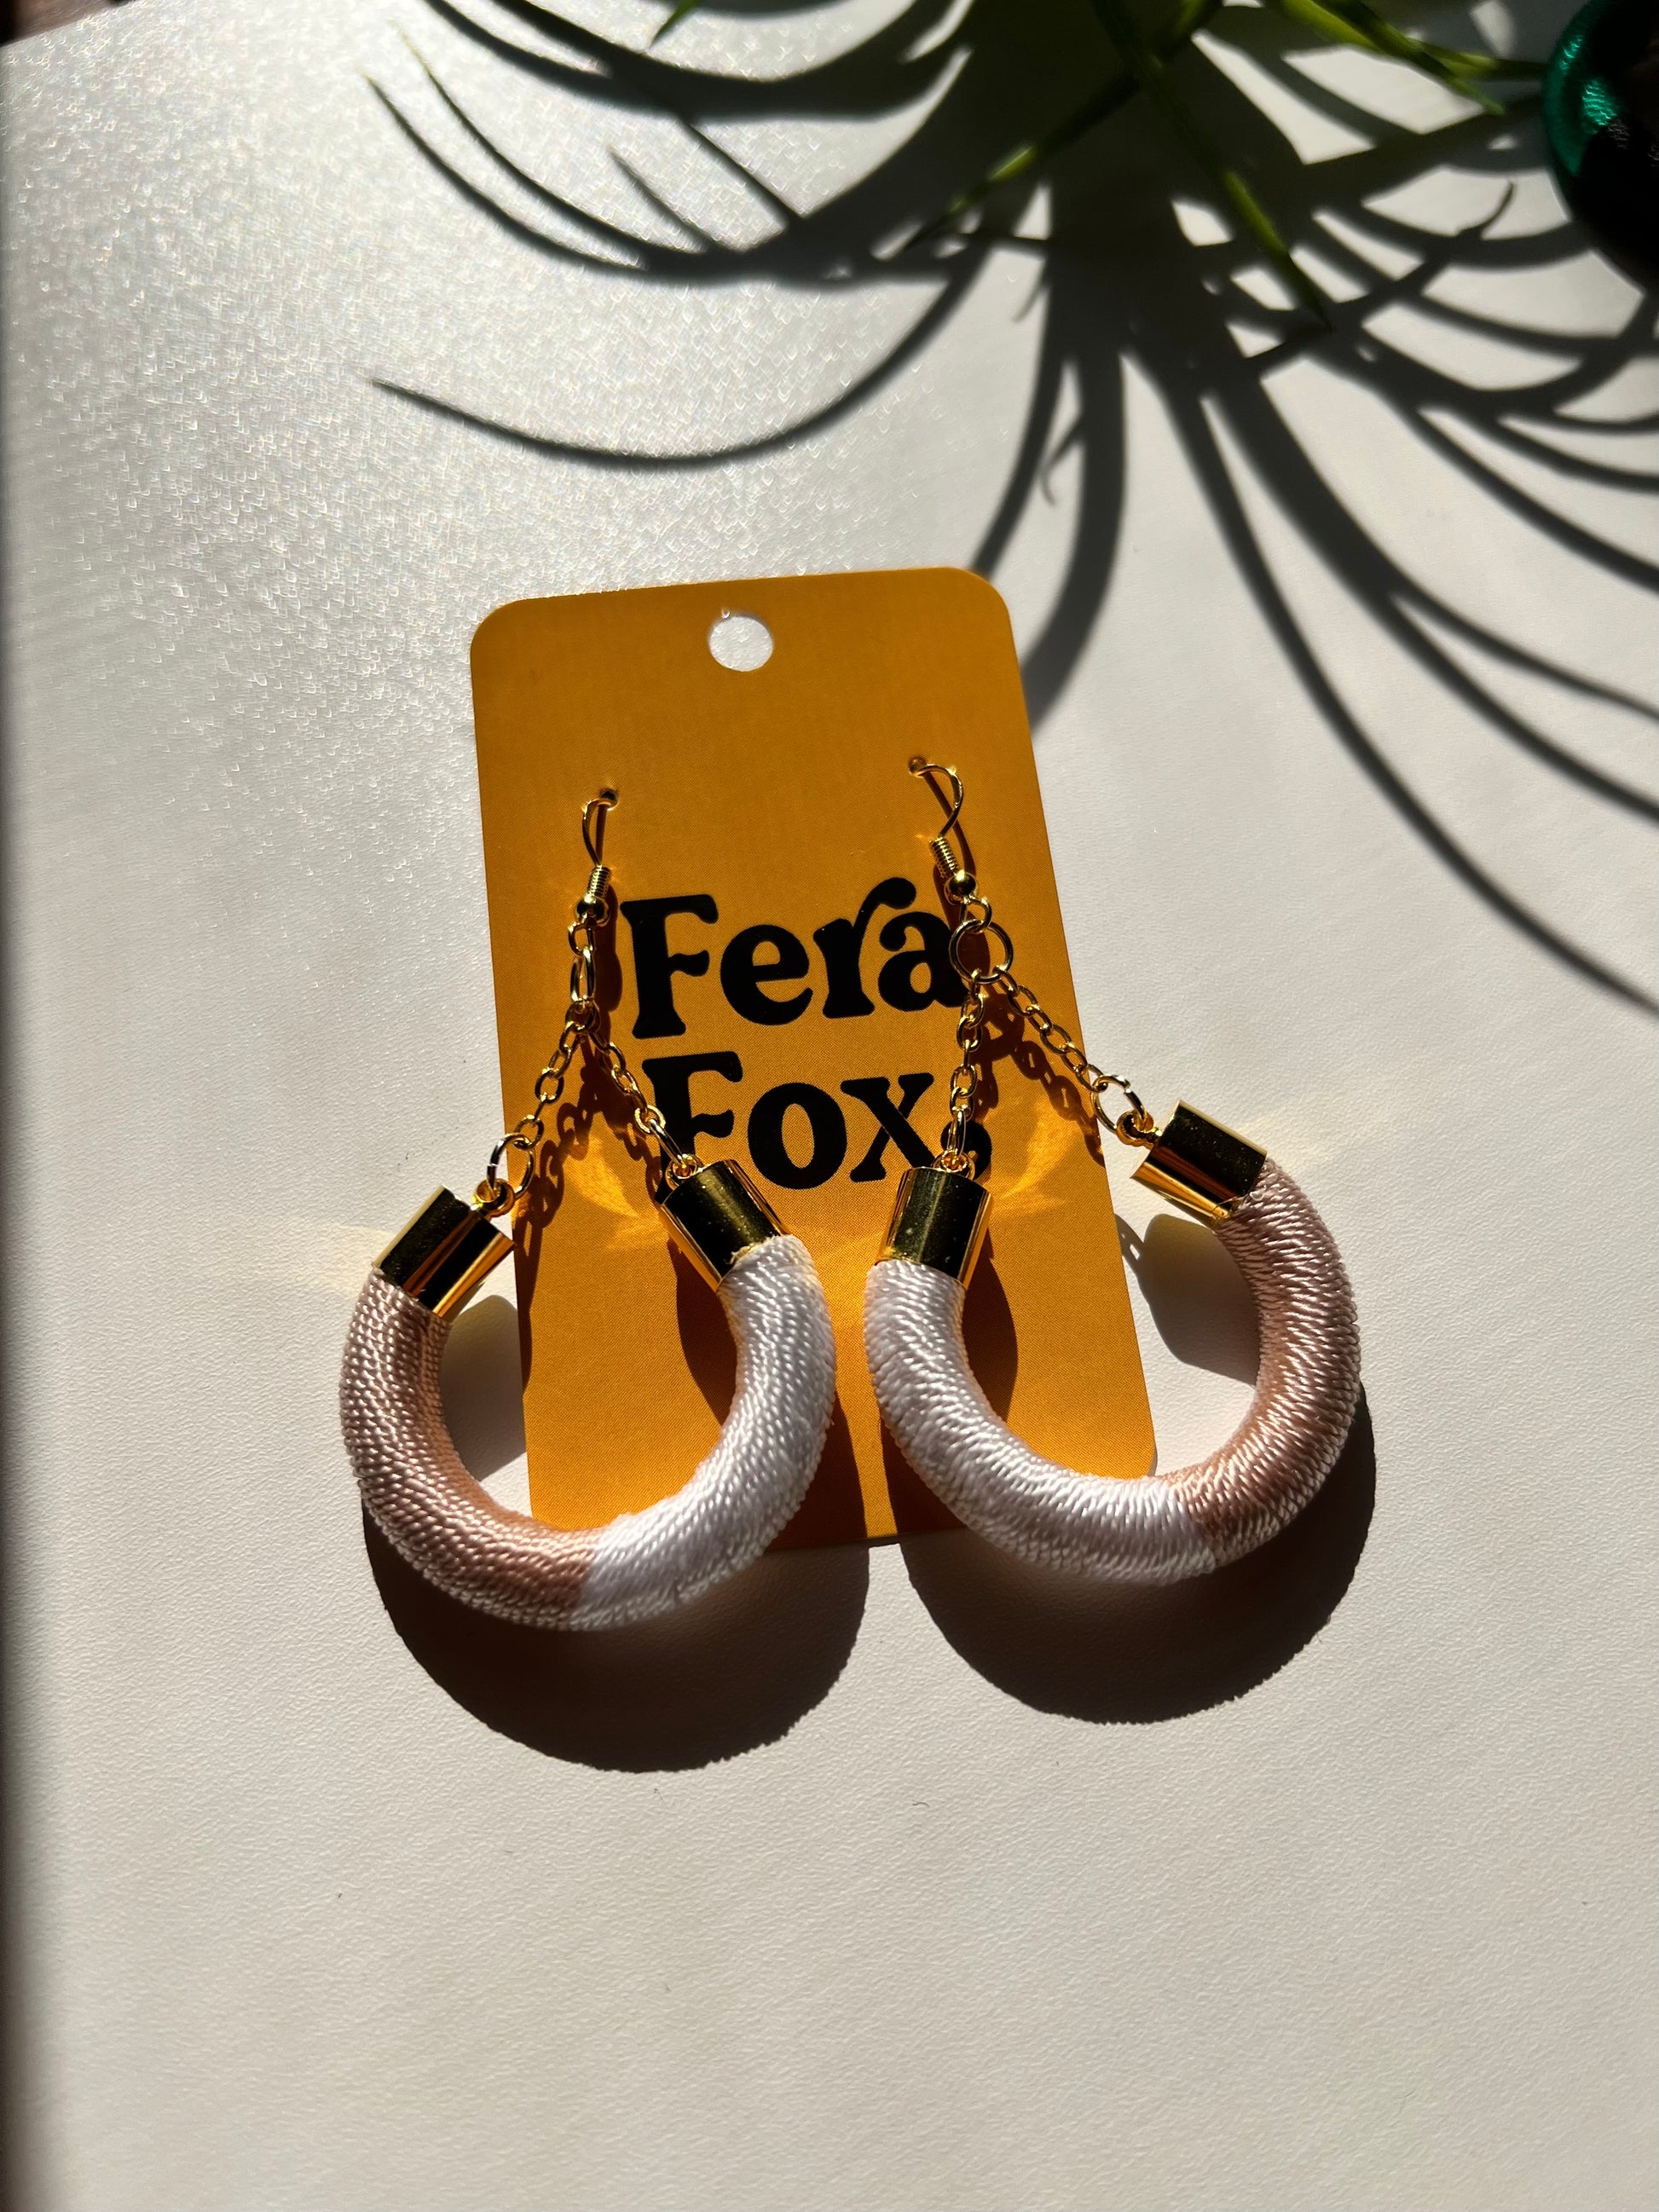 Vela hoop earrings wrapped in premium thread